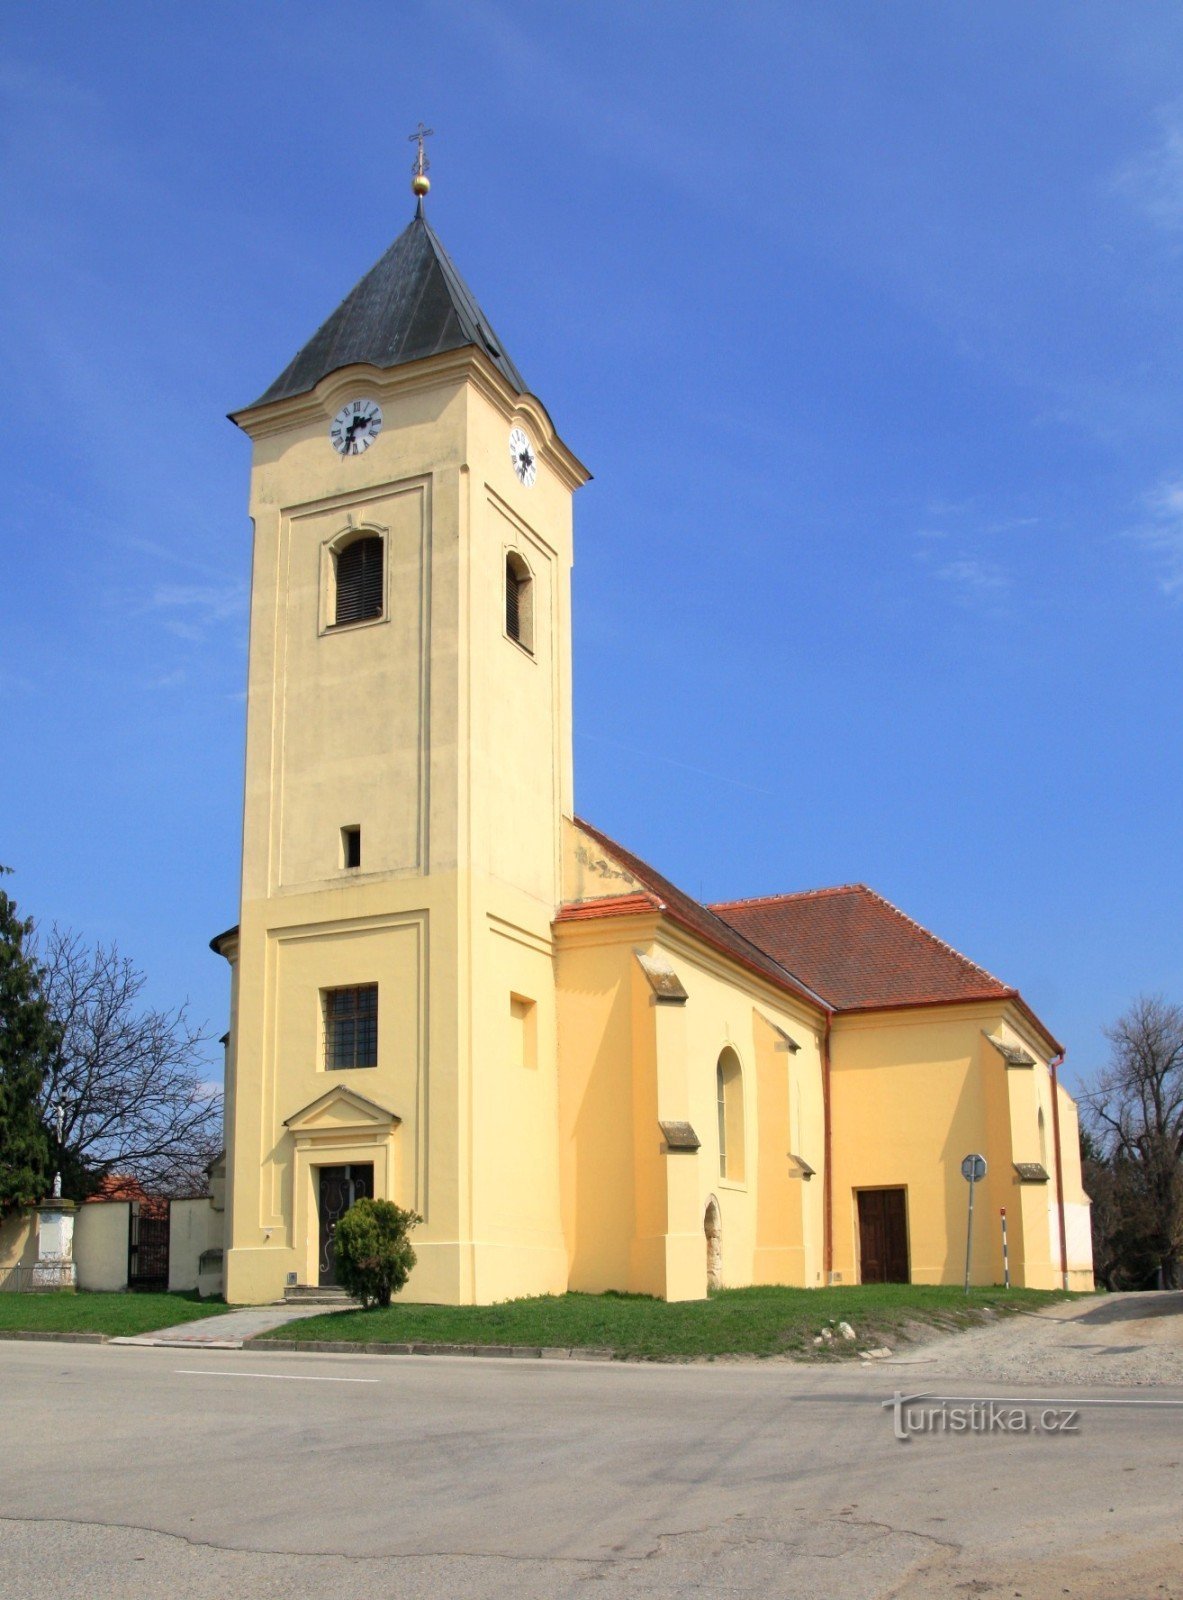 Nhà thờ St. Oldřich ở Strachotín